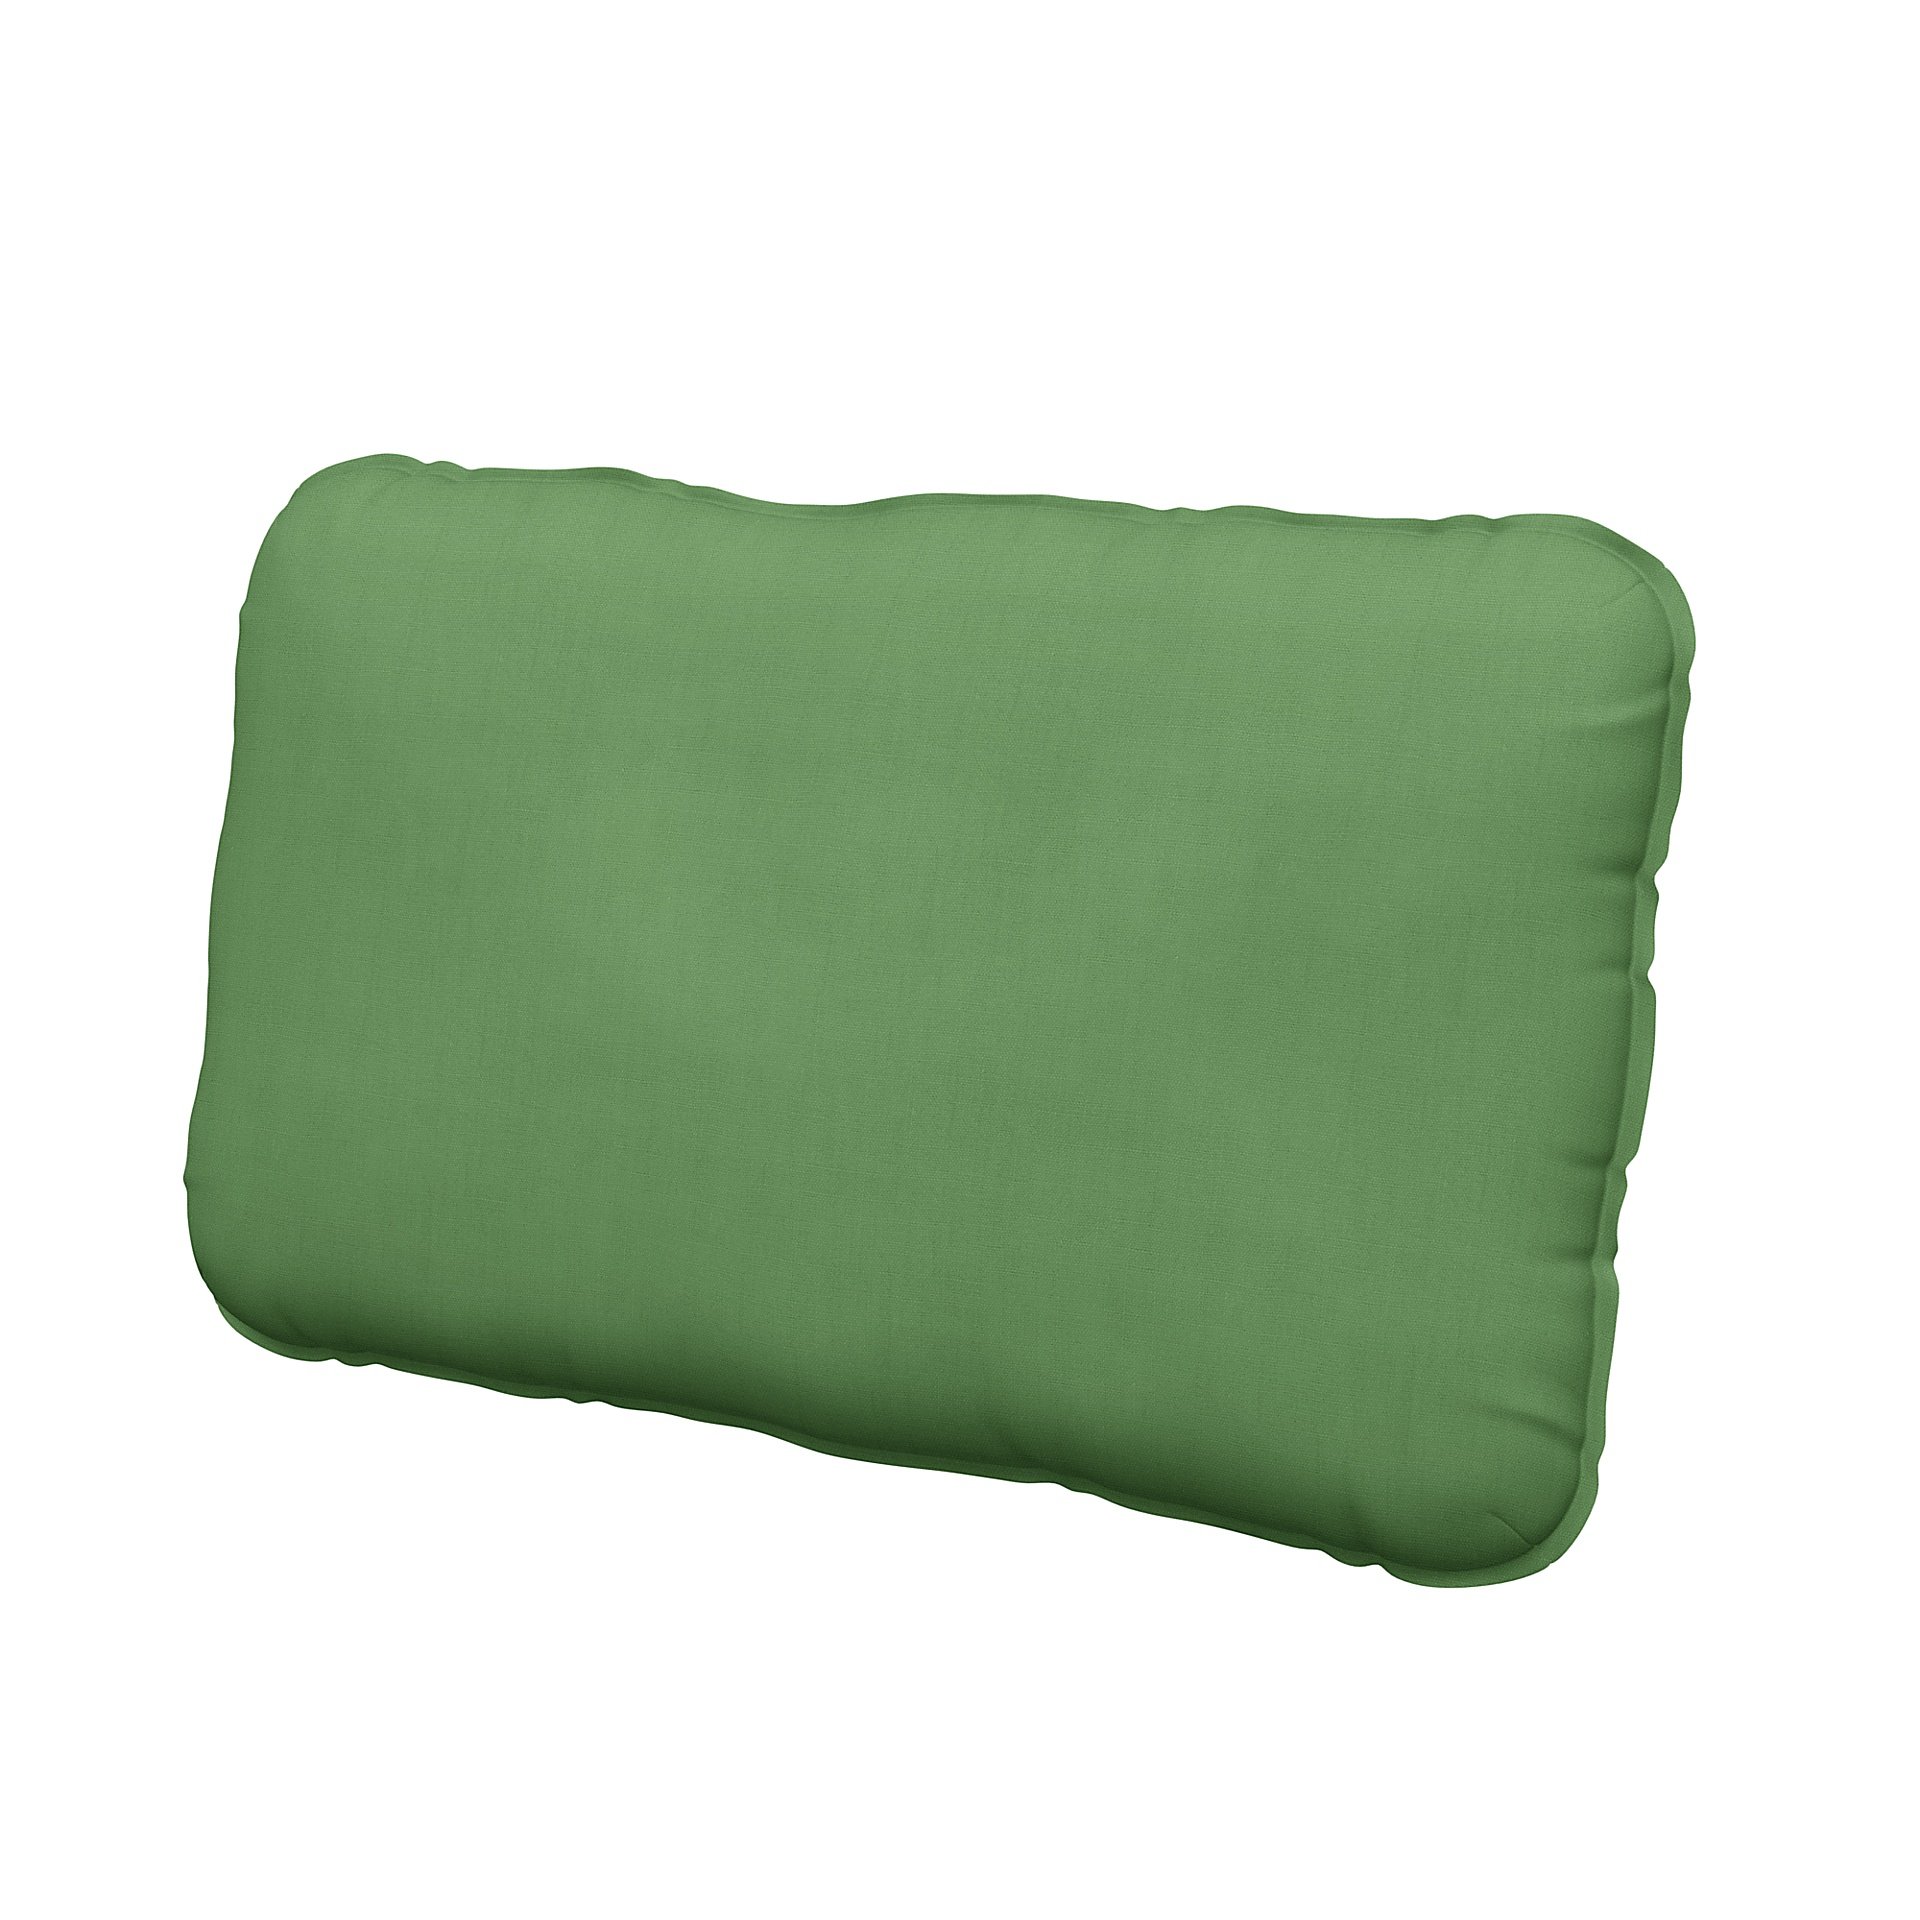 IKEA - Vallentuna back cushion cover 40x75cm, Apple Green, Linen - Bemz